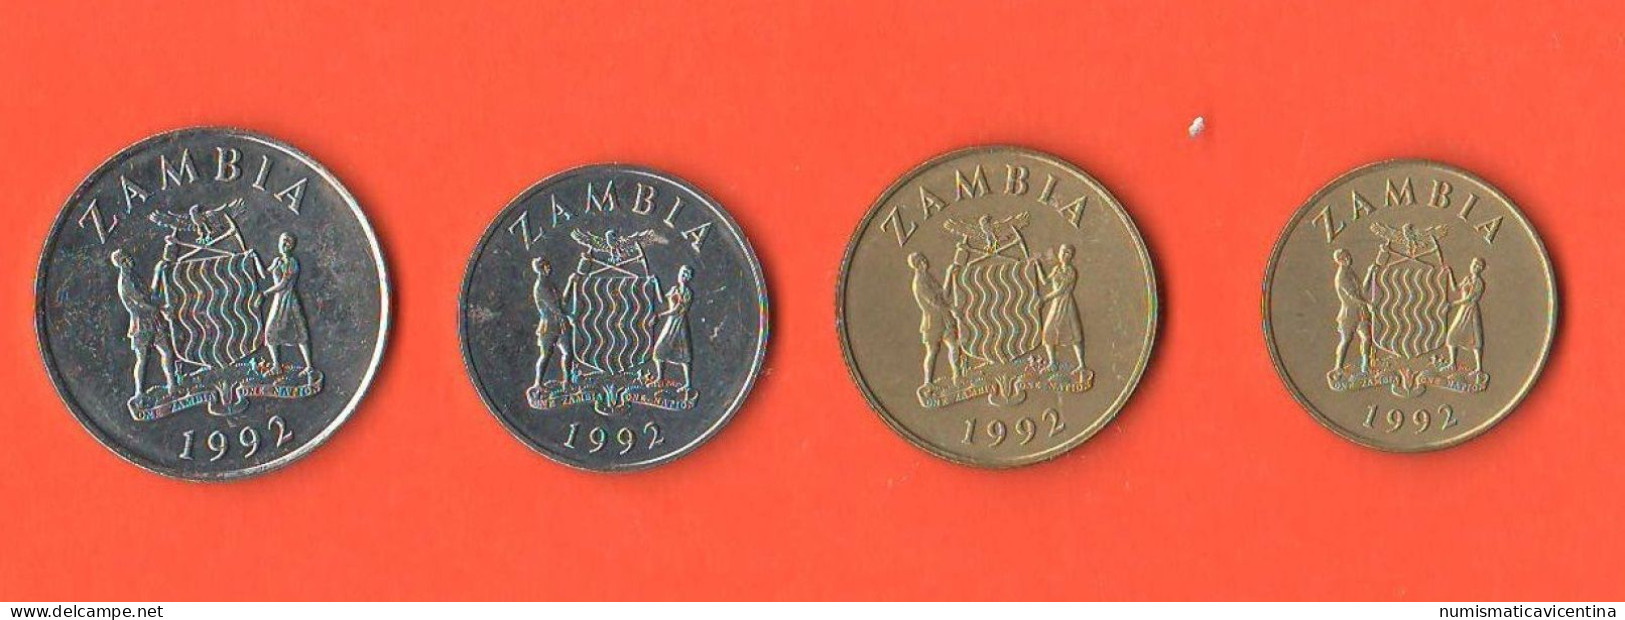 Zambia 1 + 5 Qwacha +5 + 50 Ngwee 1992 Zambia Africa State Animals - Sambia